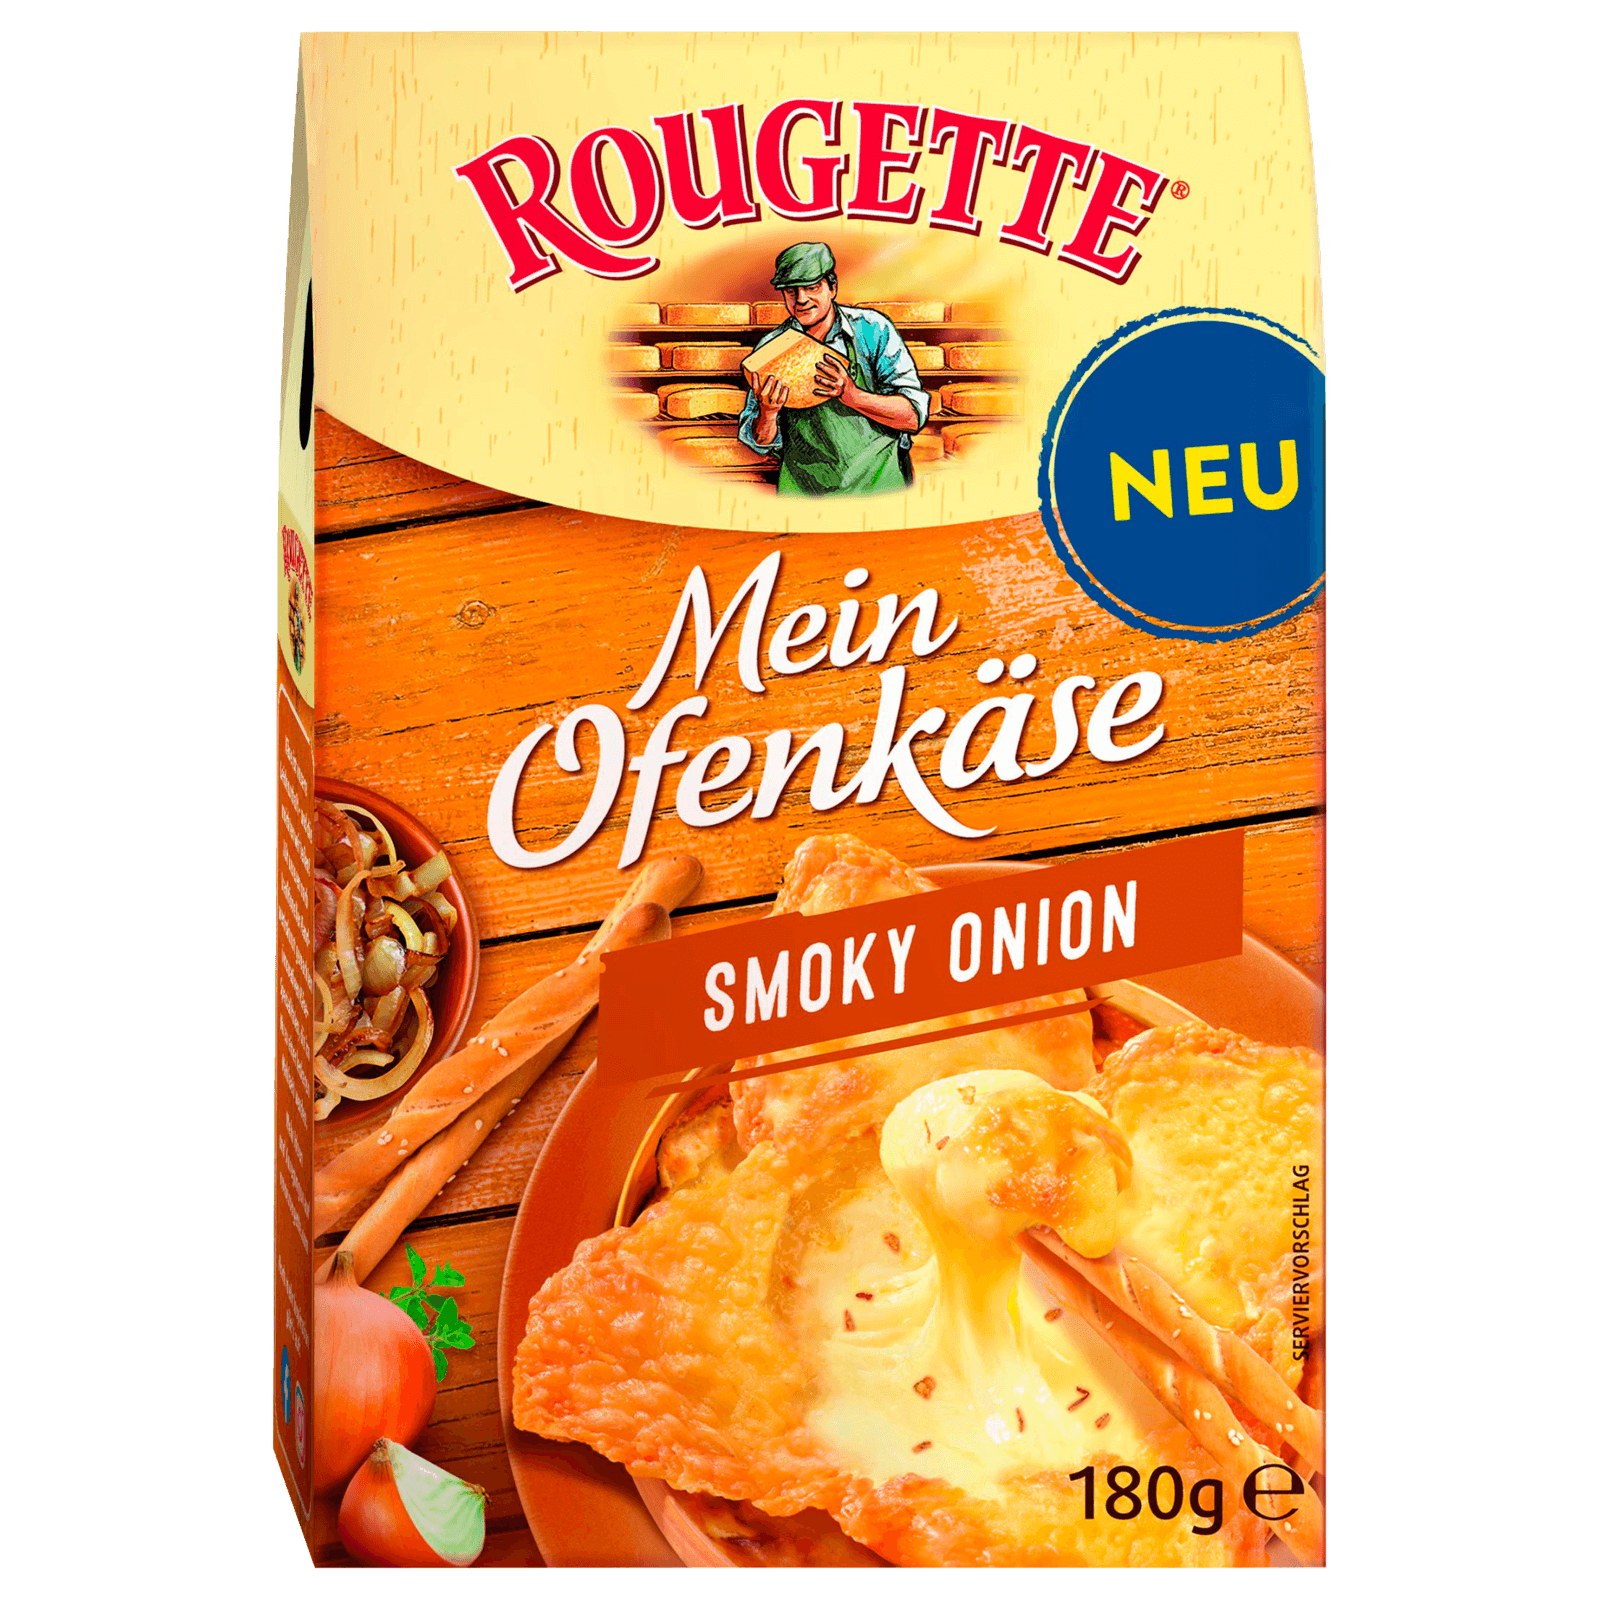 online bestellen! bei Smokey Onion Rougette REWE Ofenkäse 180g